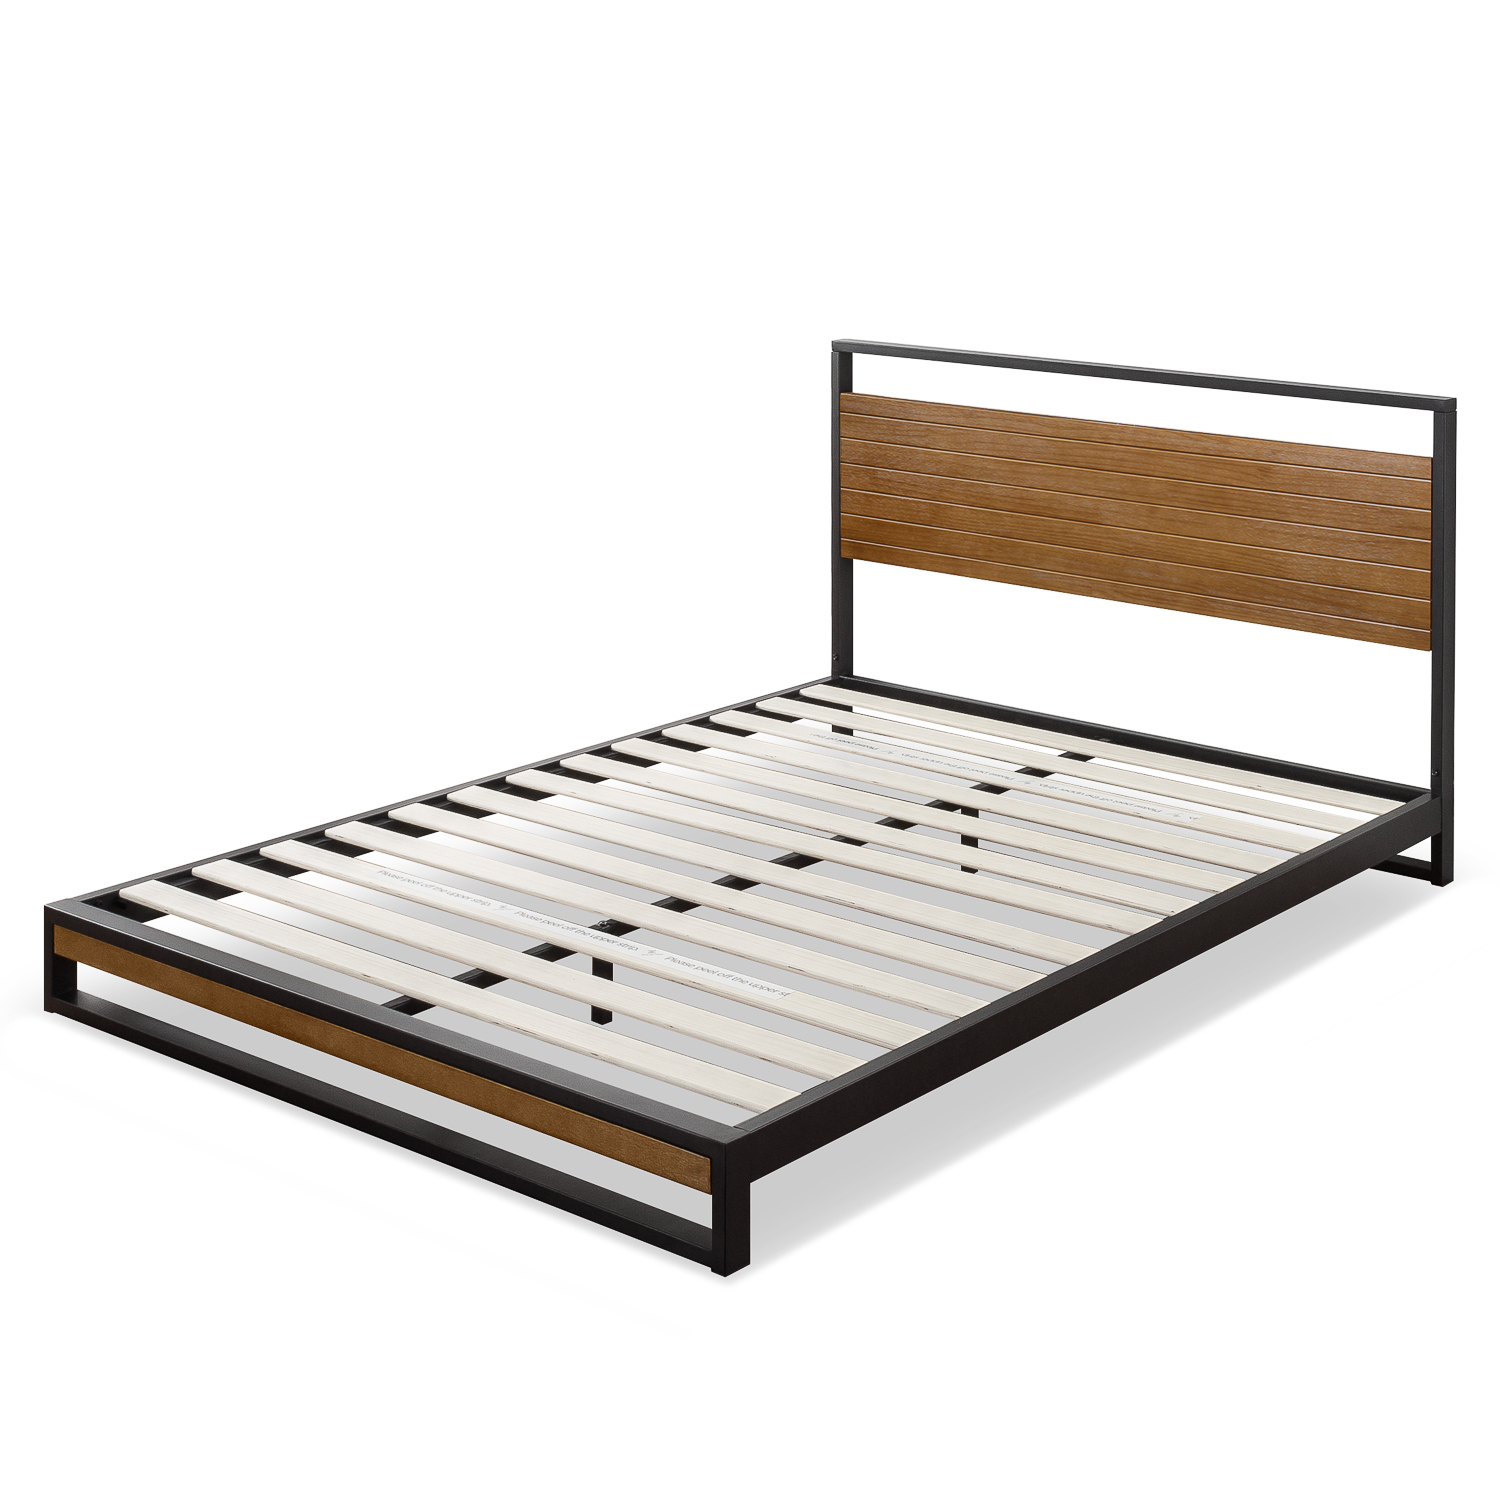 Giường ngủ bằng thép sắt và gỗ màu nâu hạt dẻ